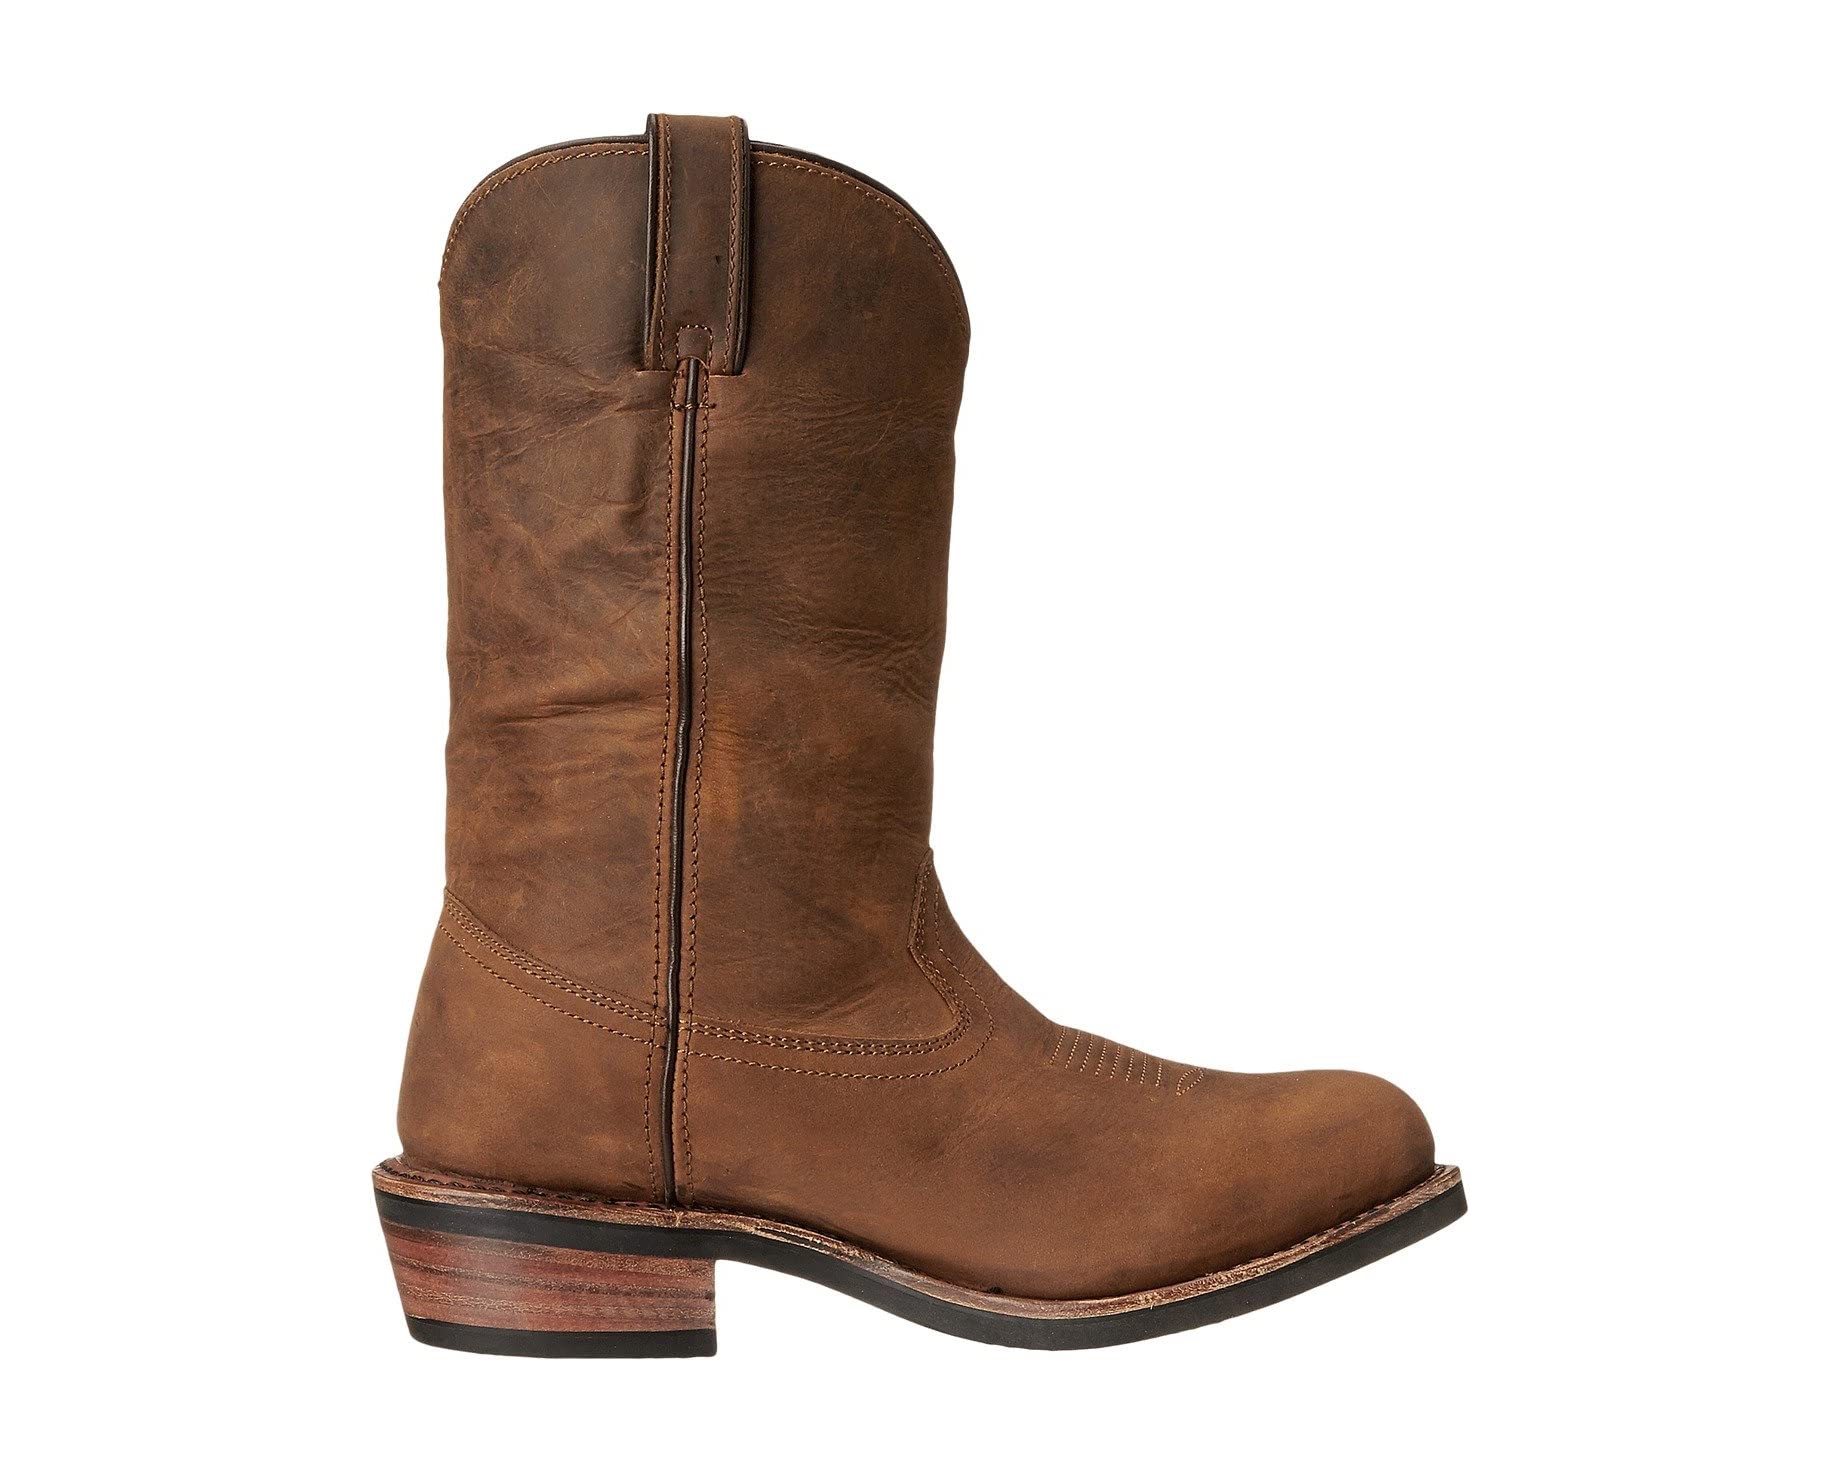 Ботинки Albuquerque Dan Post, коричневый ботинки dan post storms eye waterproof composite toe eh цвет brown orange